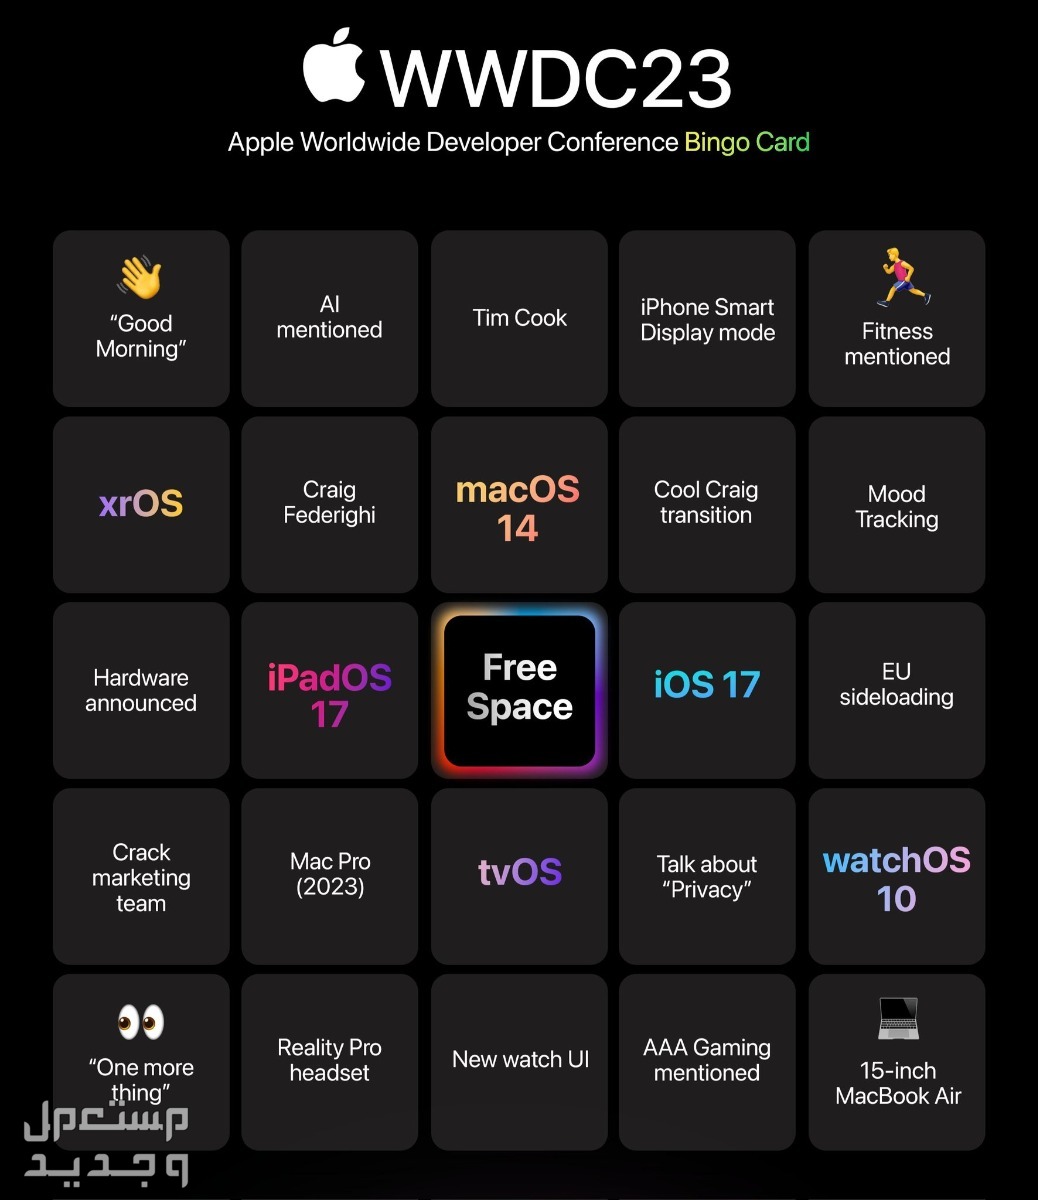 ما الجديد الذي يقدمه نظام ابل الجديد iOS 17 في الجزائر